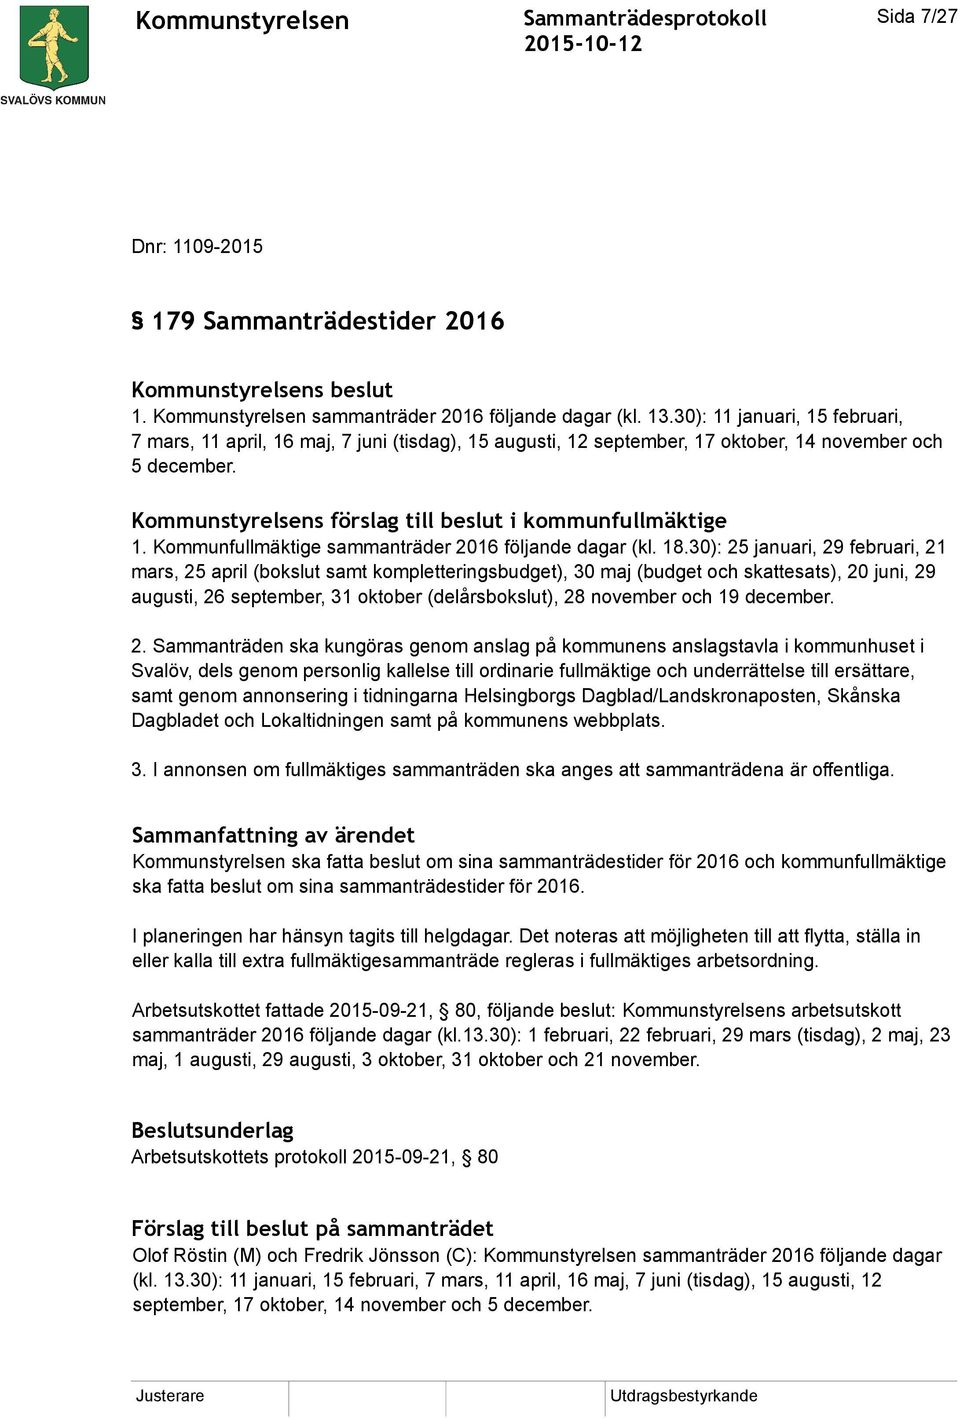 Kommunfullmäktige sammanträder 2016 följande dagar (kl. 18.